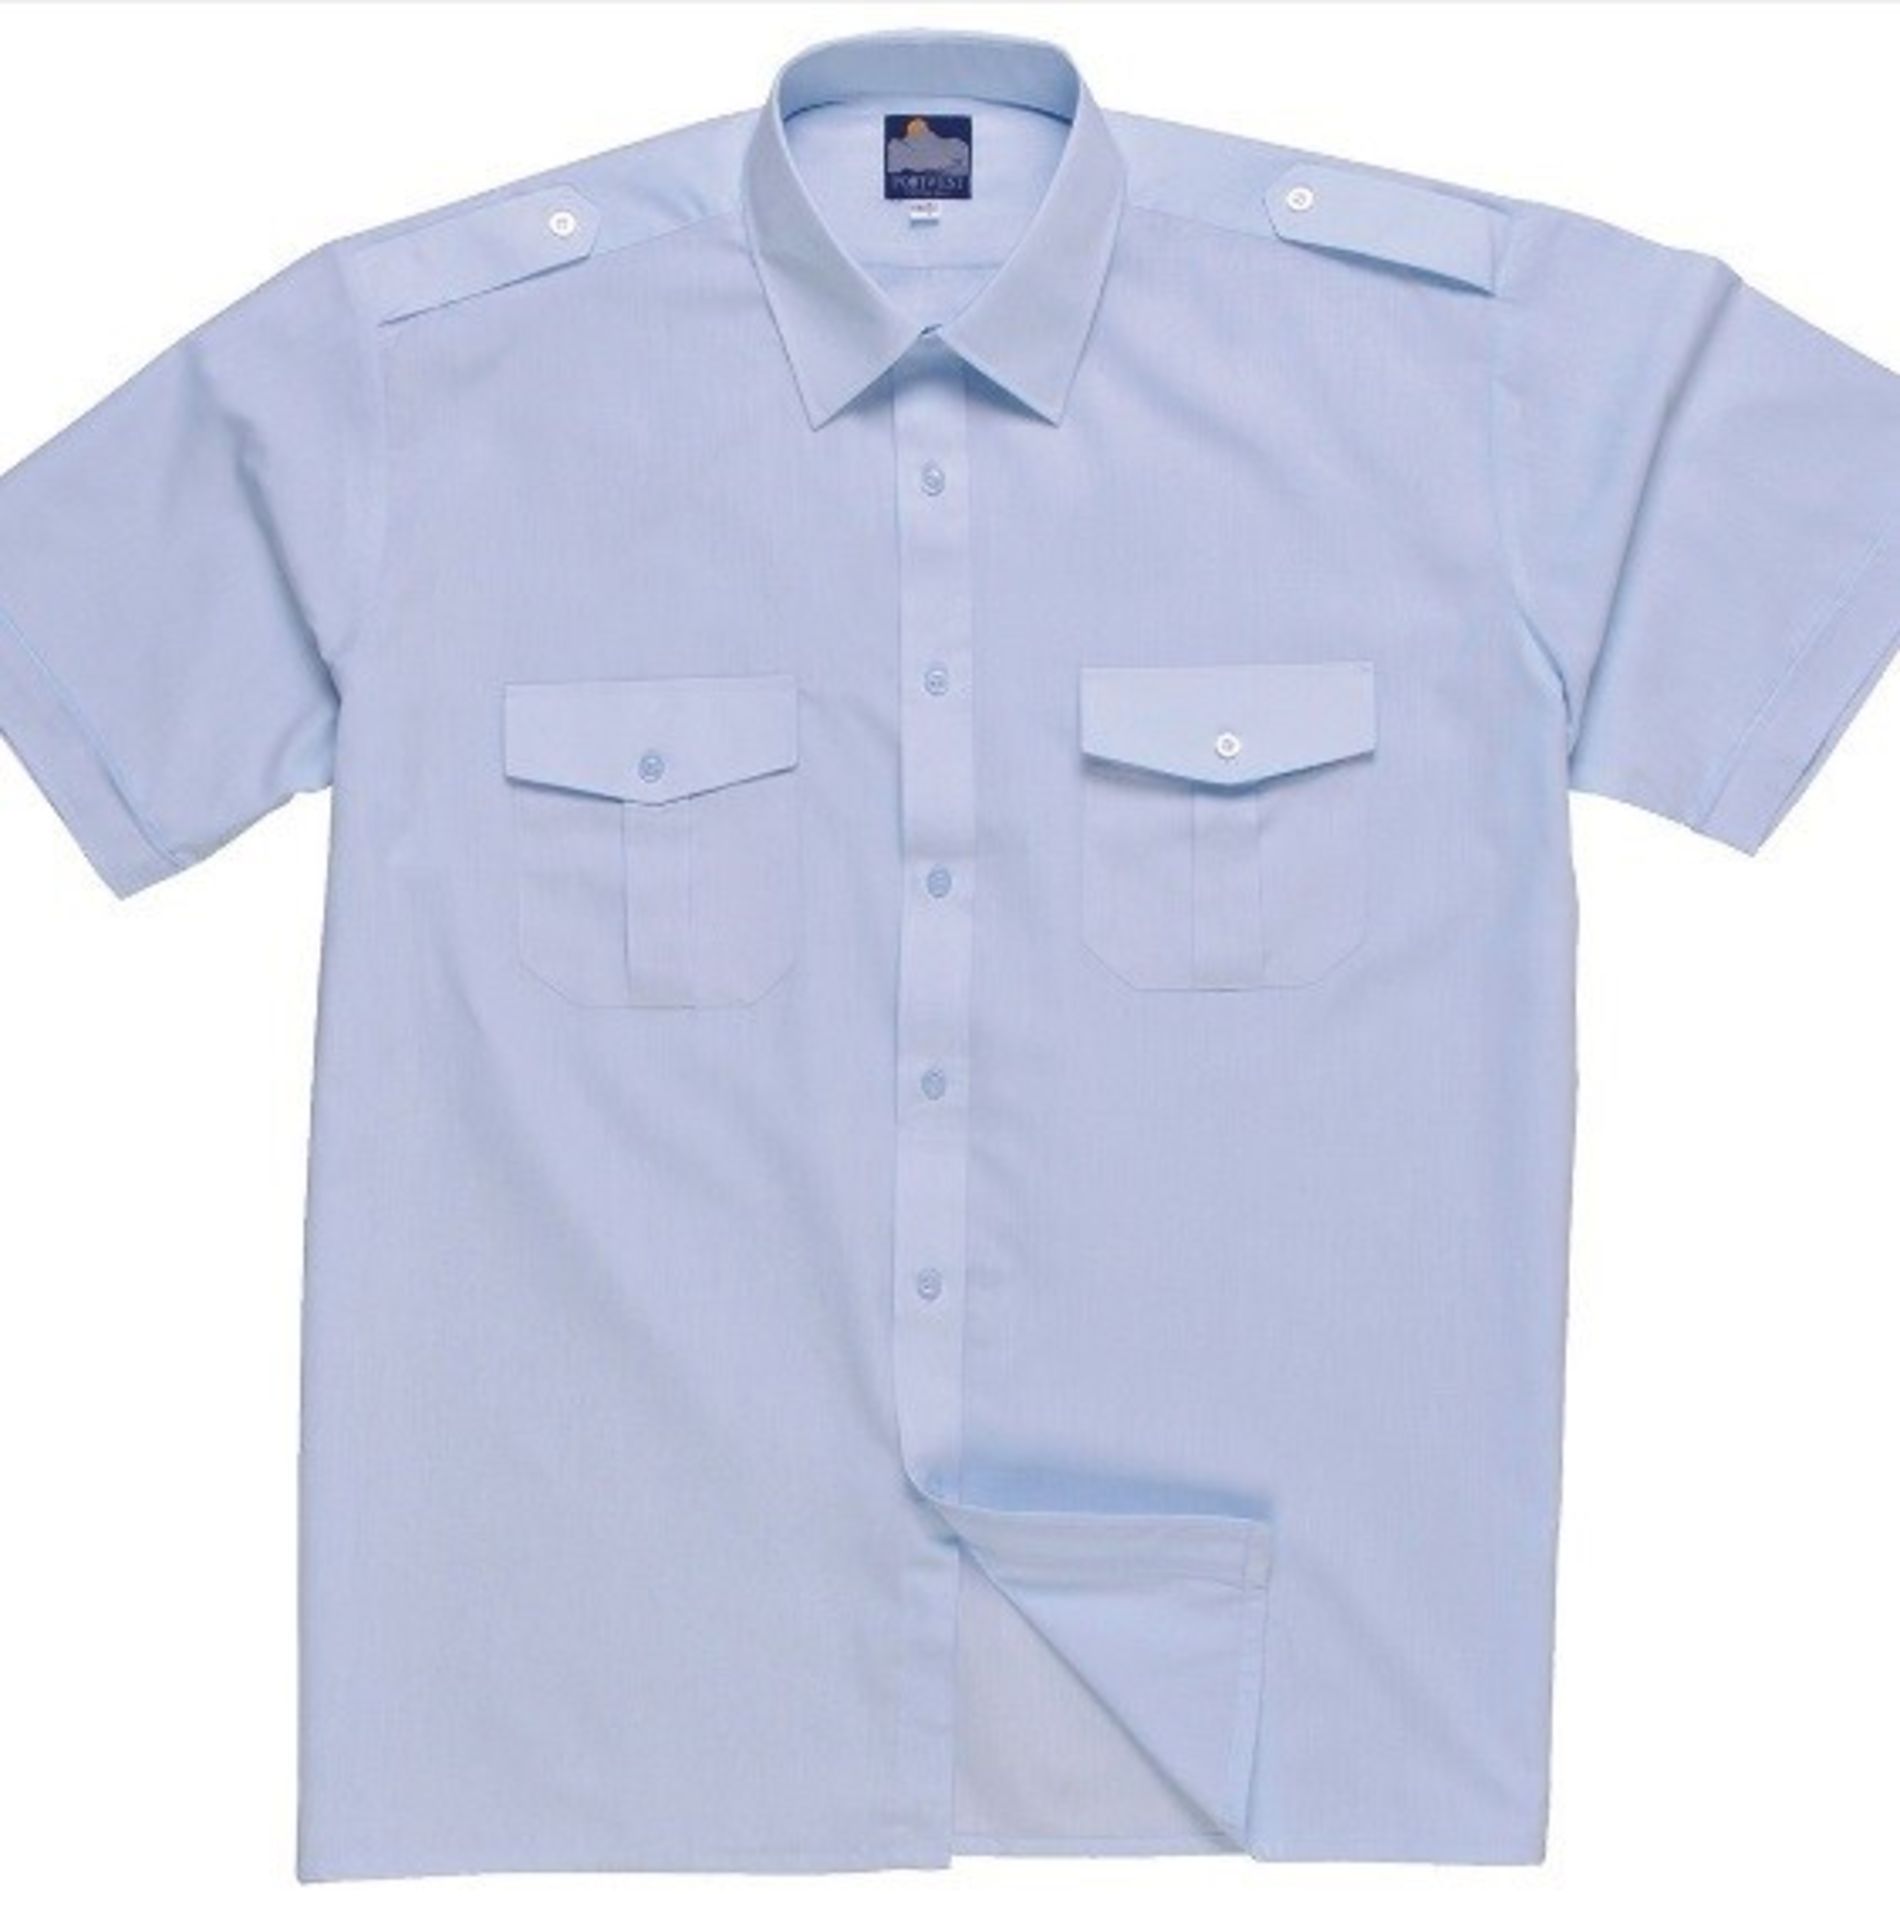 10 x Portwest Pilot Shirt Short Sleeve (Workwear) Colour: BLUE - Neck 16.5" - CL185 - Ref: PW/S101/